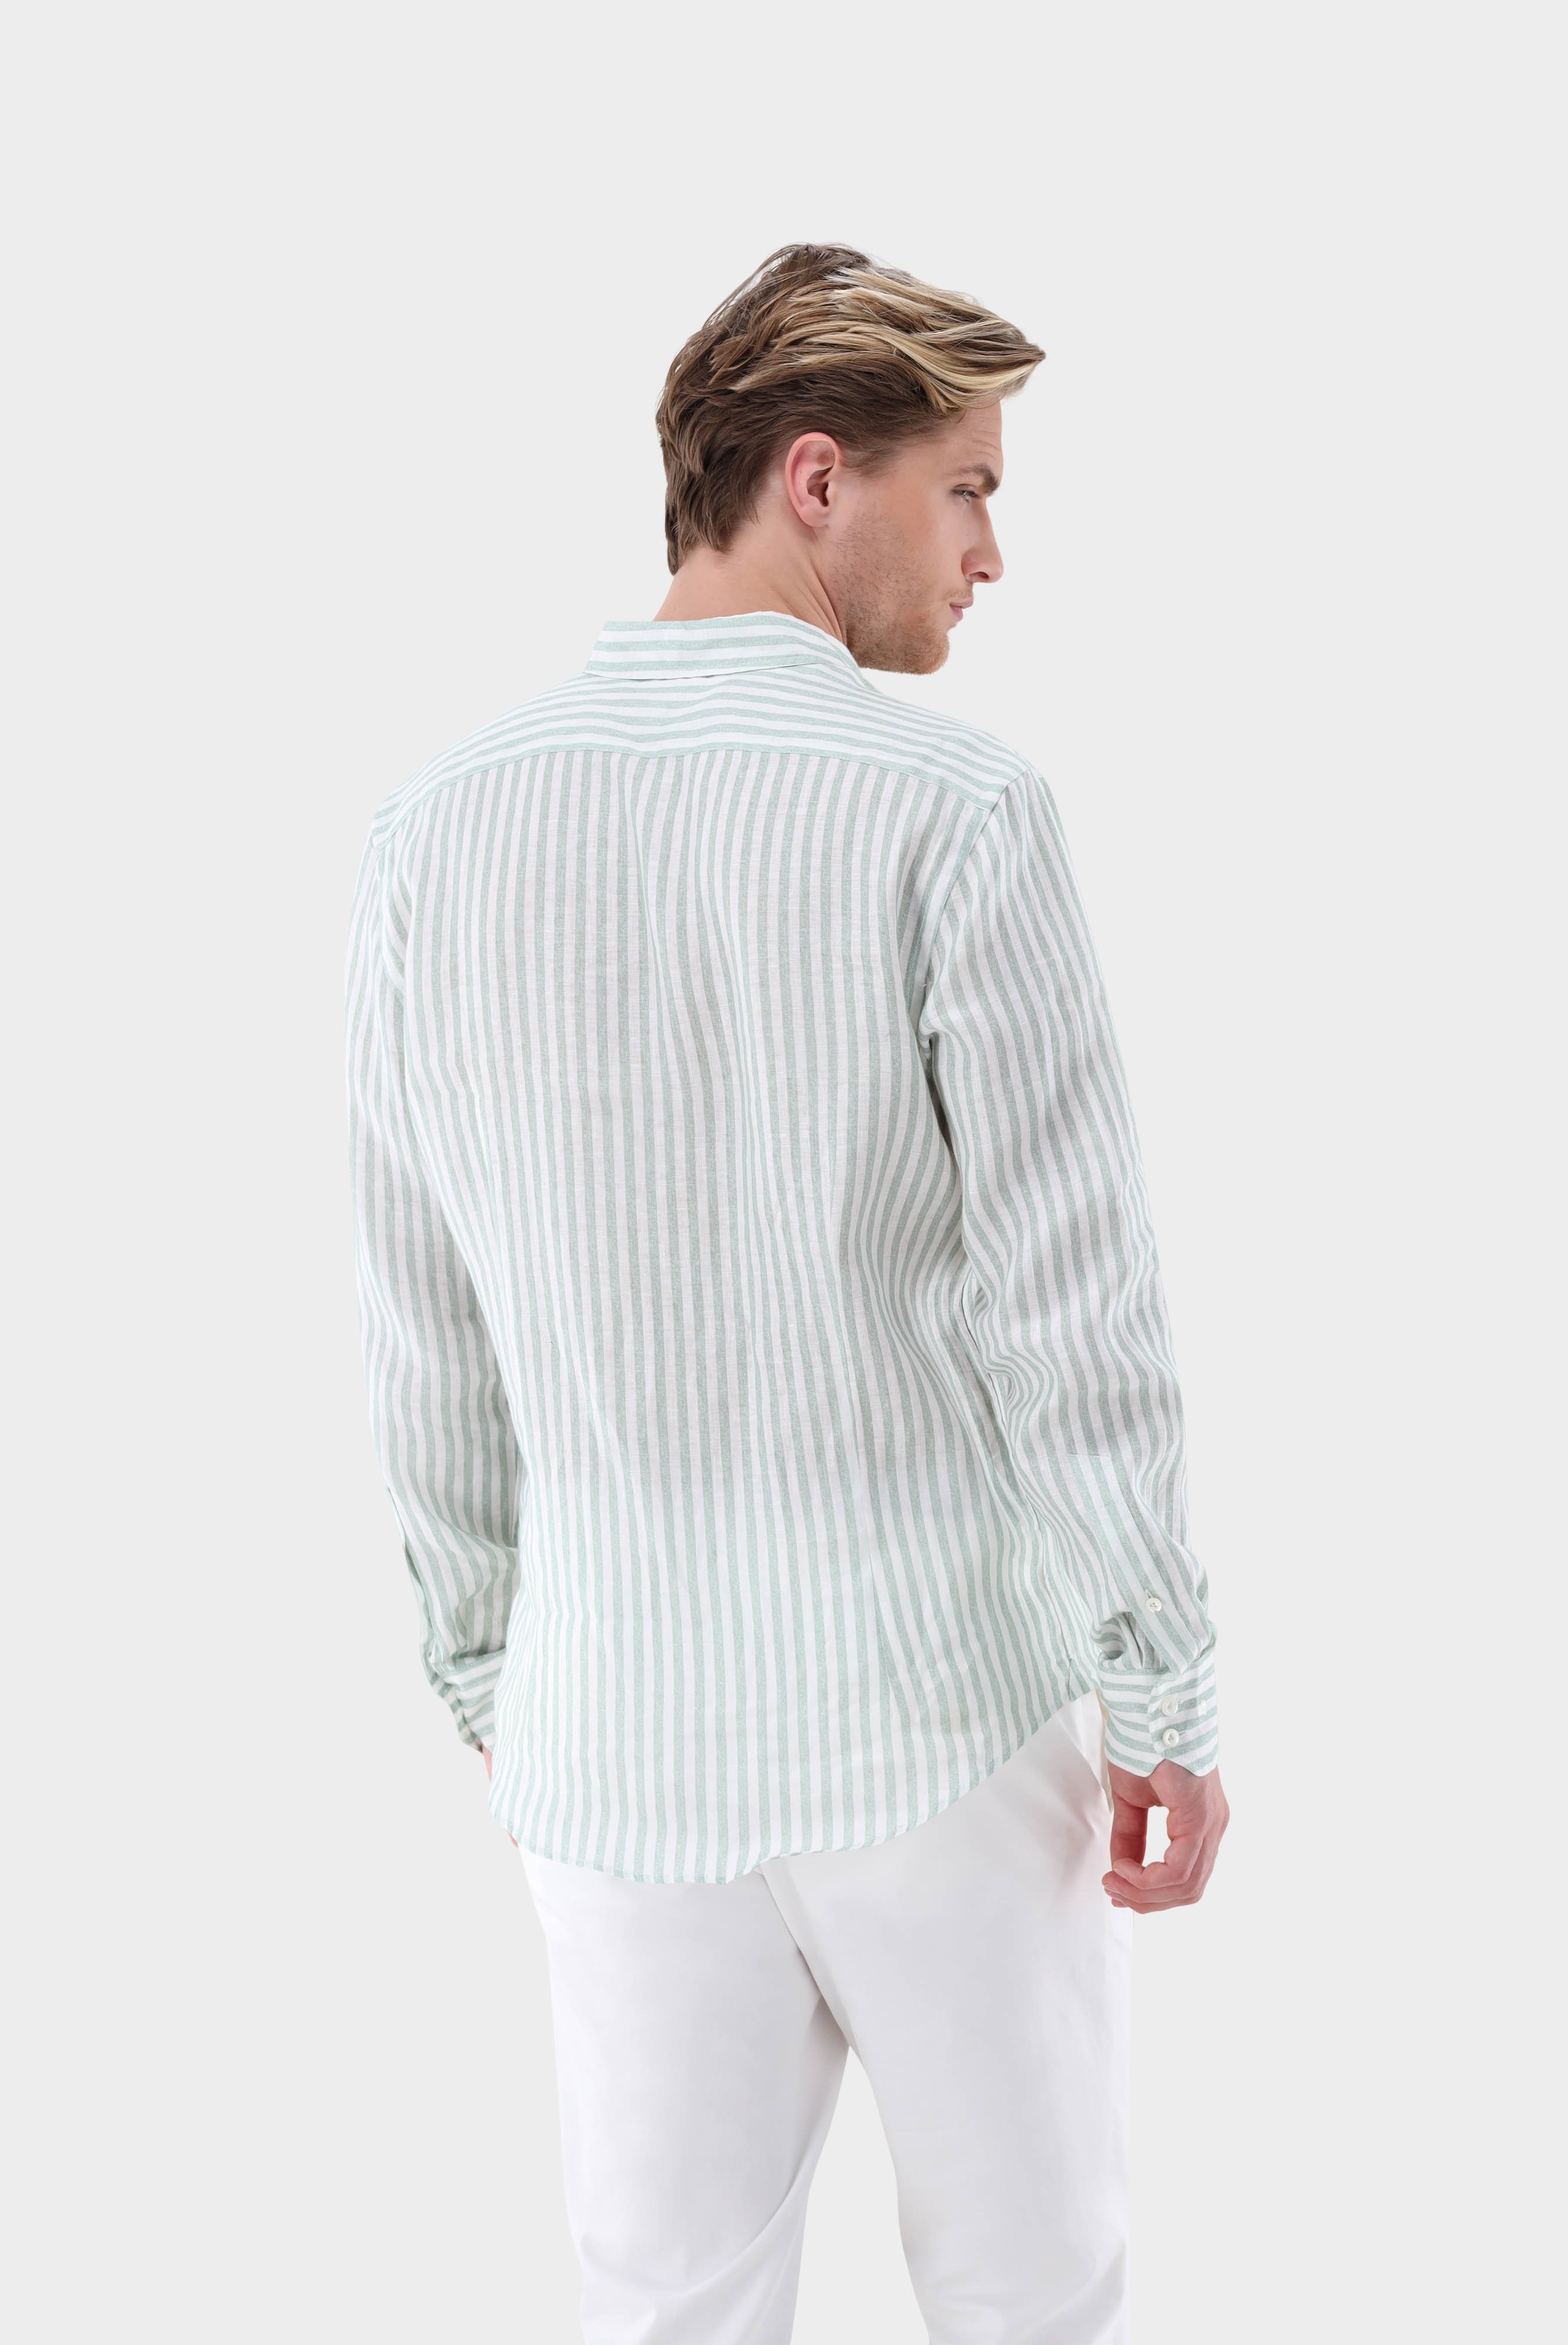 Casual Hemden+Leinenhemd mit Streifen-Druck Tailor Fit+20.2013.9V.170352.940.39